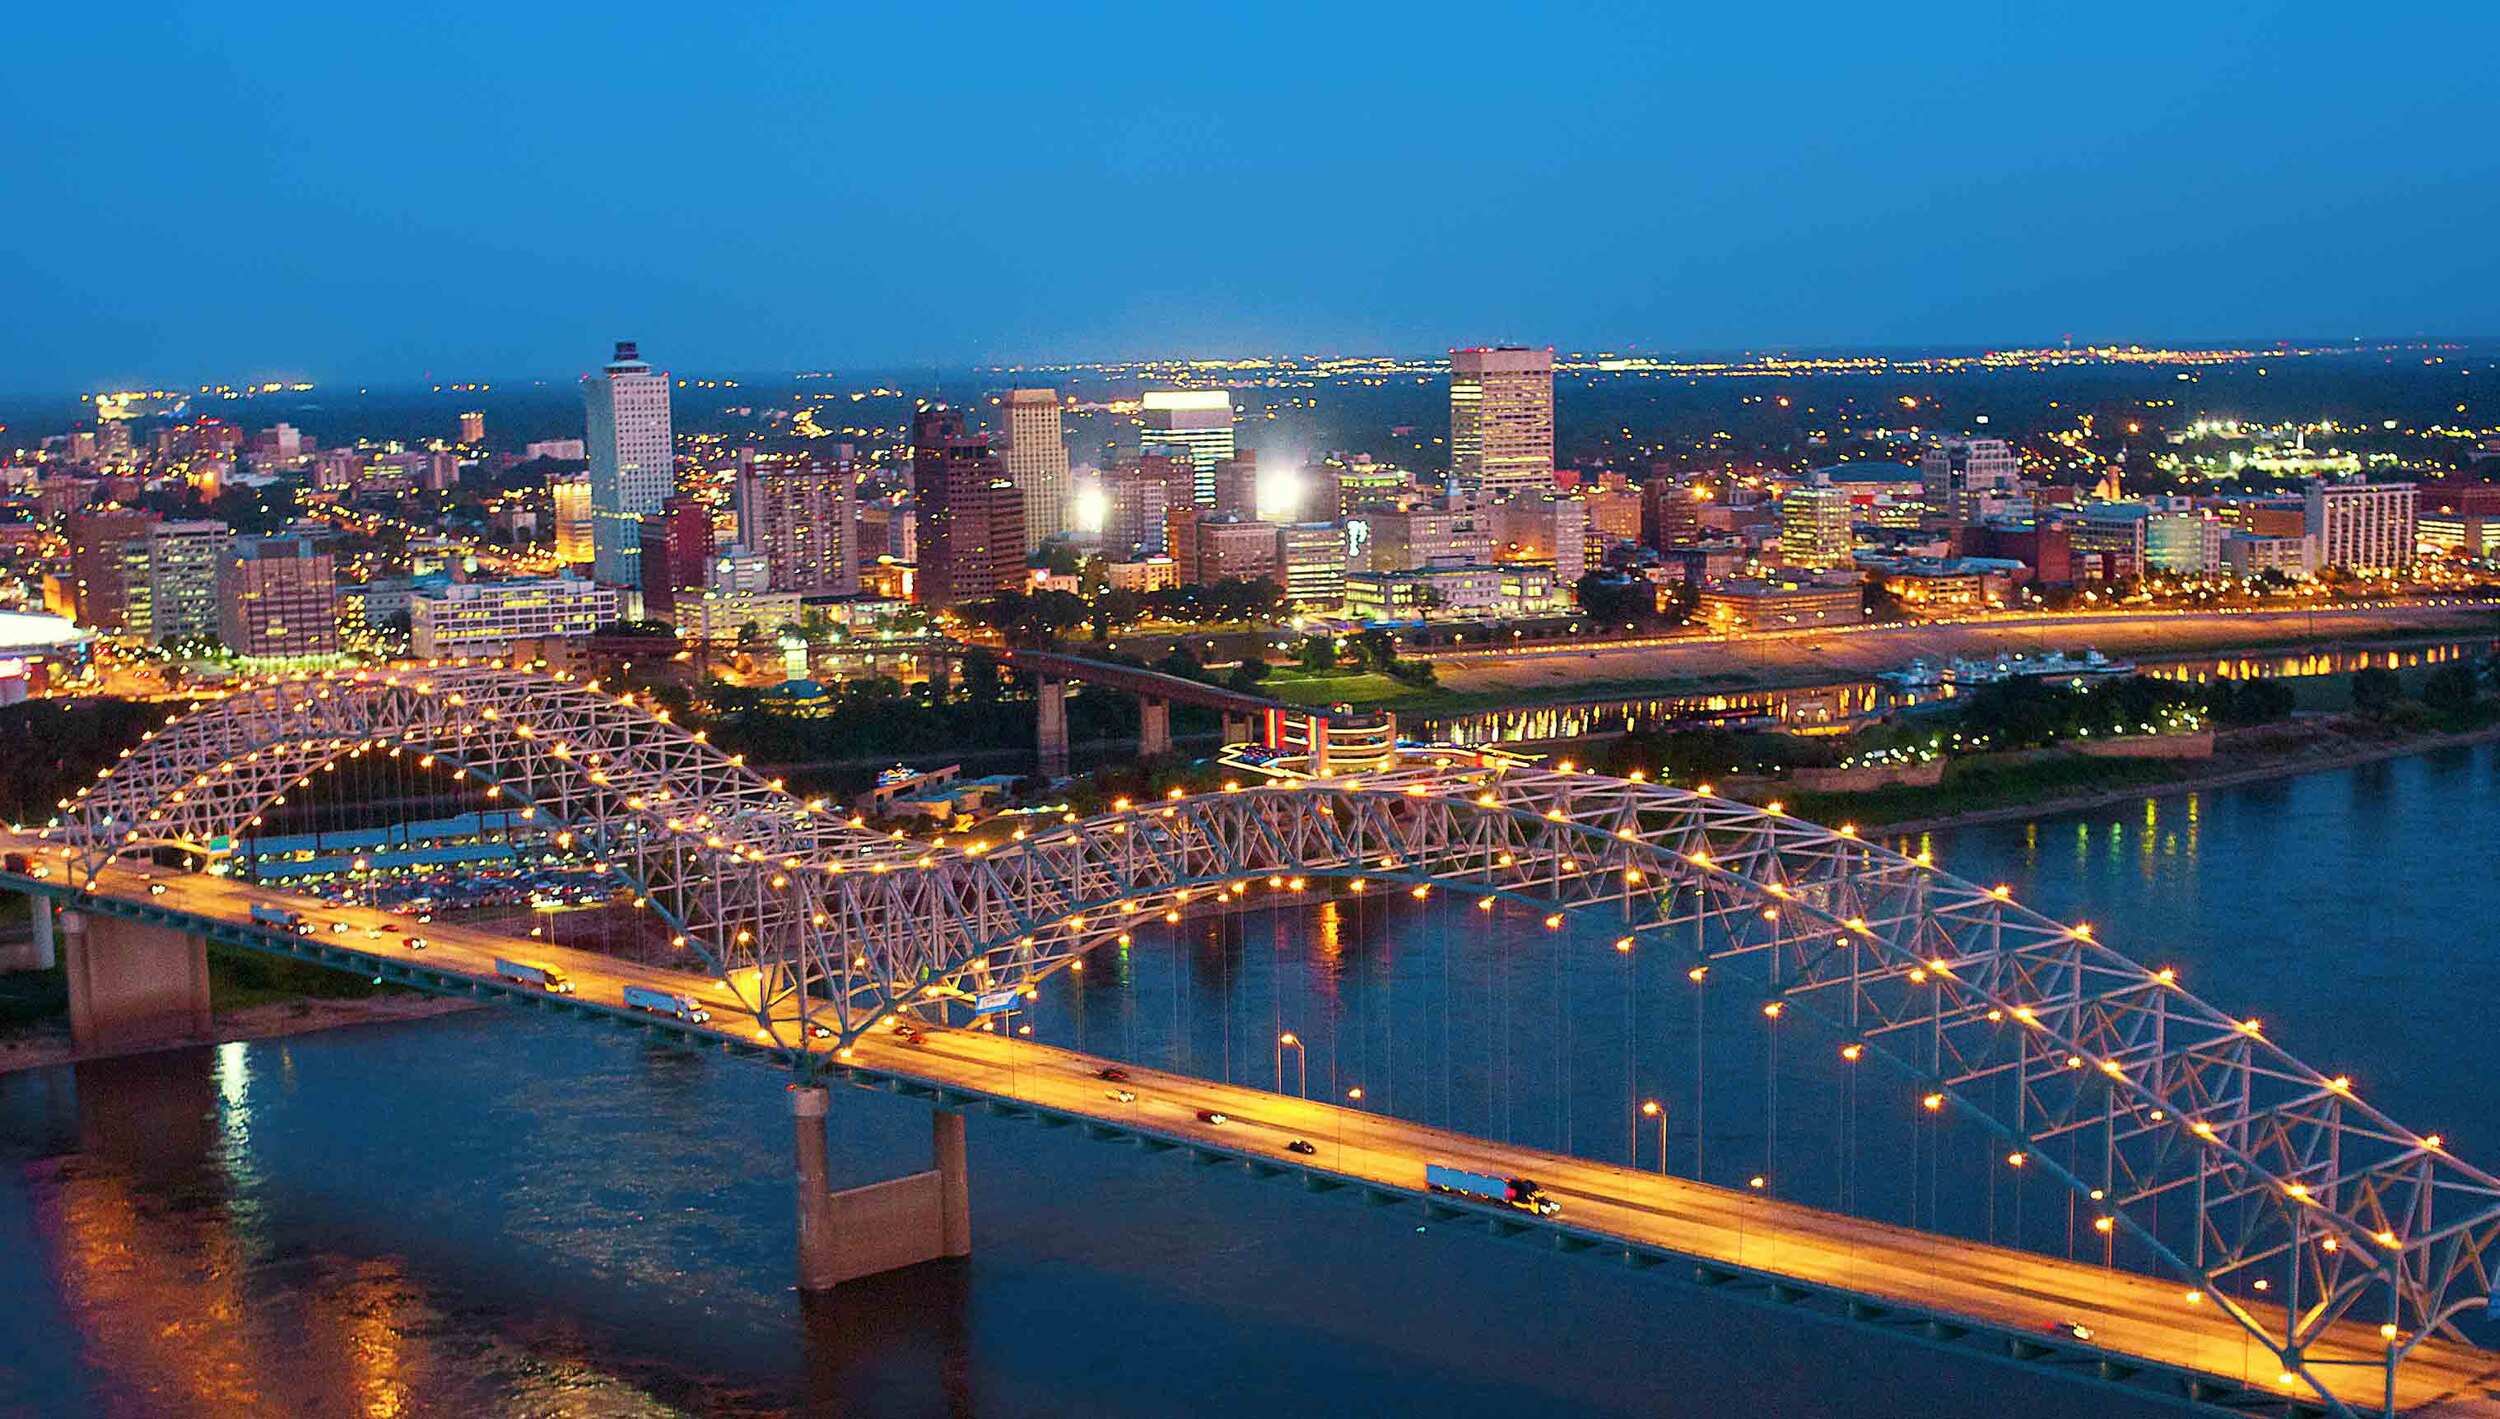 Generic_Memphis_Skyline_Bridge.jpg